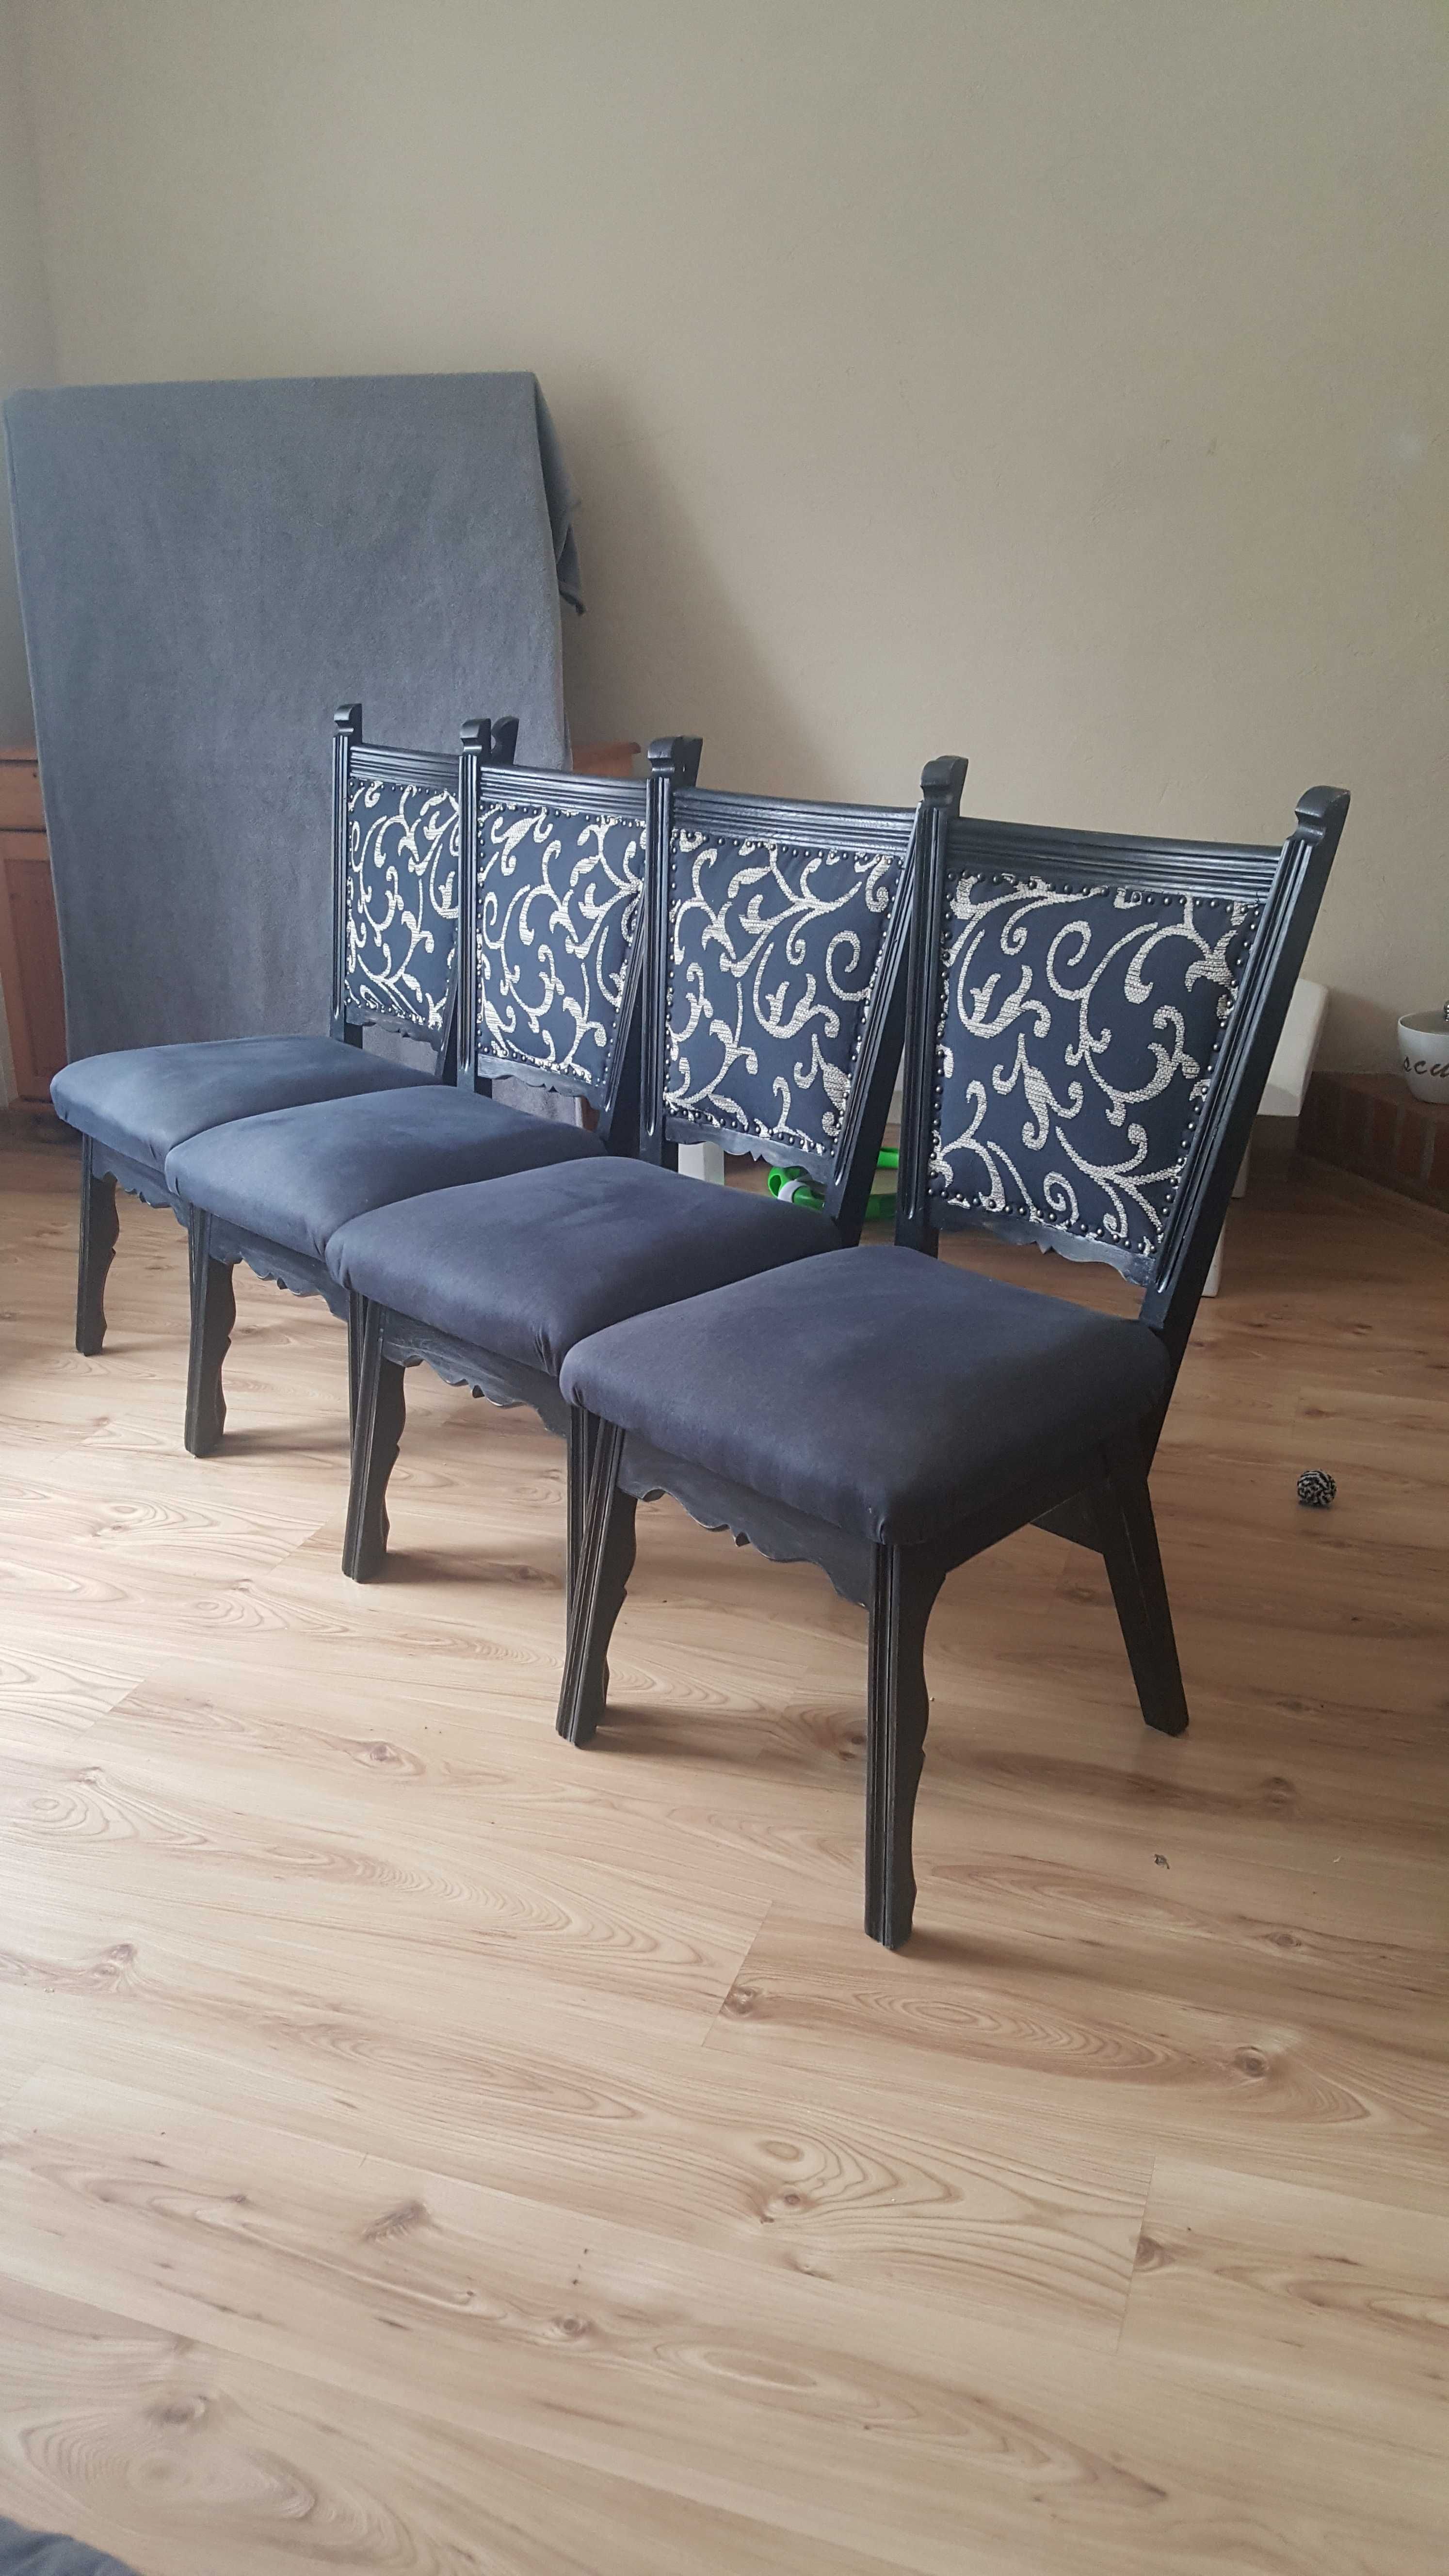 Krzesła dębowe stylowe komplet 4 sztuki z obiciem na sprężynach